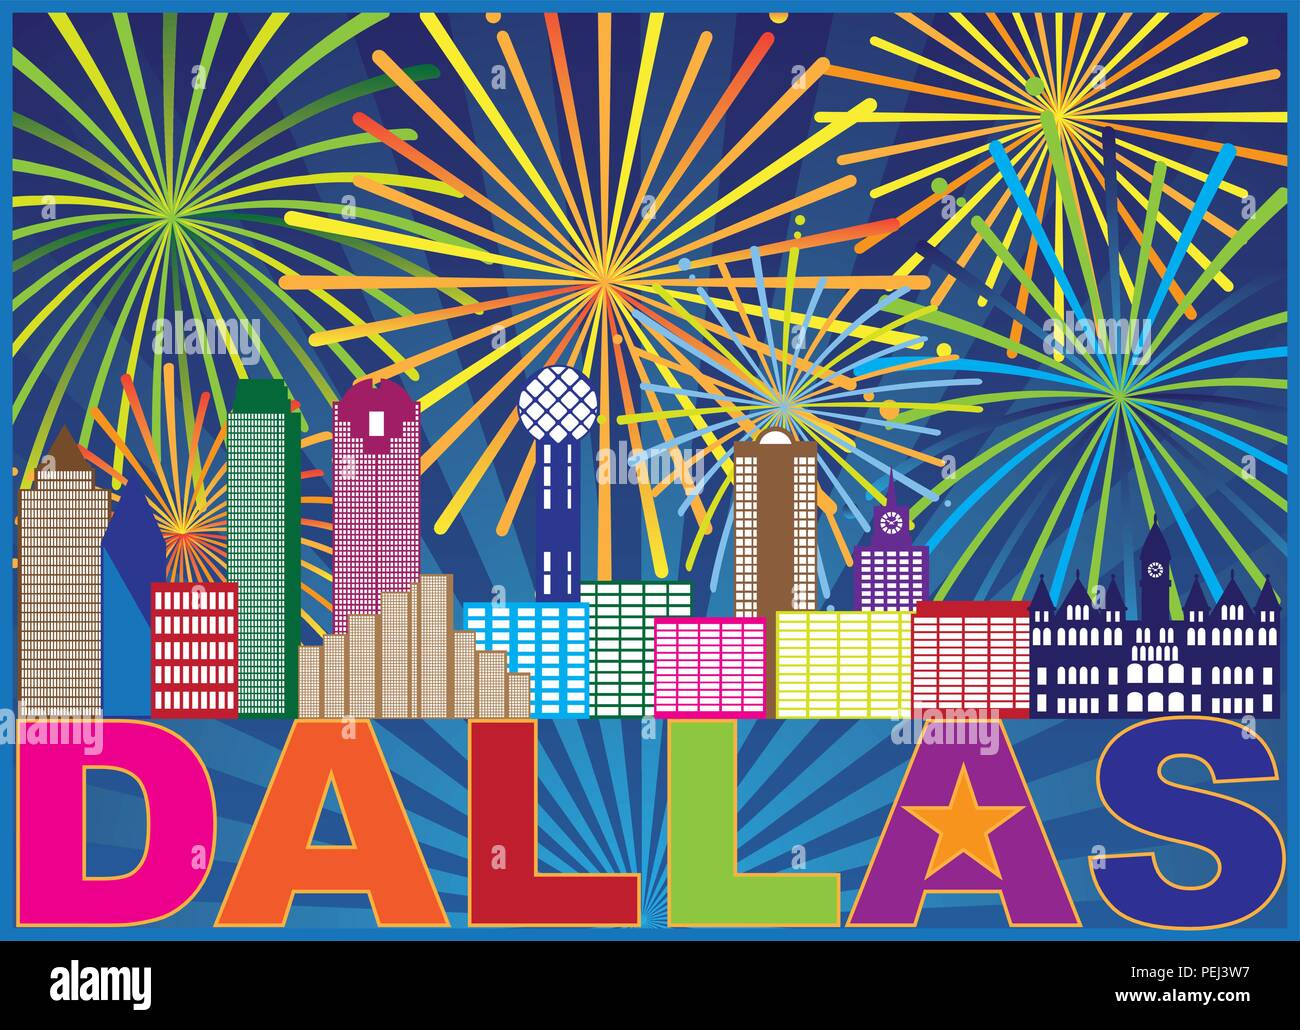 Dallas Texas City Skyline Umrisse Feuerwerk mit Text und Lone Star abstrakte Abbildung Stock Vektor